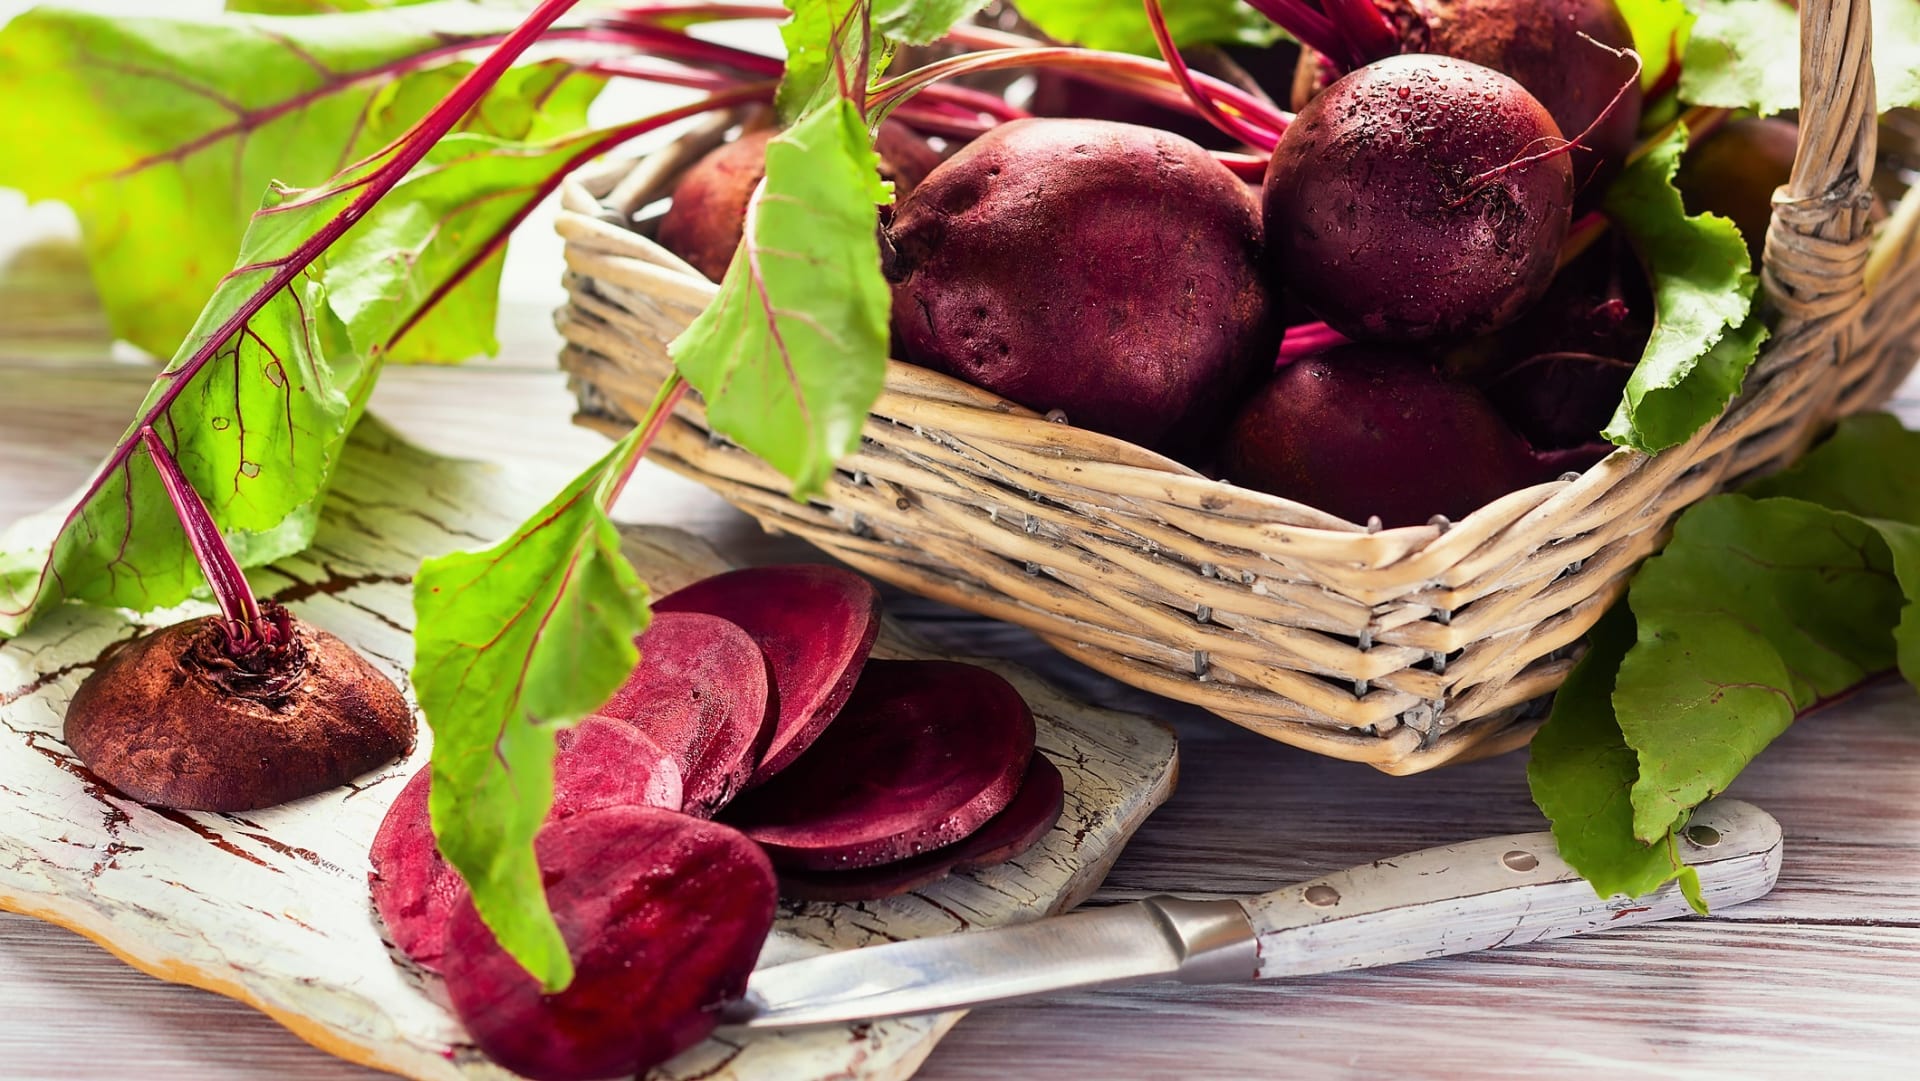 Dužnaté bulvičky s charakteristickým červenofialovým zabarvením patří k nejzdravějším zeleninám. Červenou salátovou řepu (Beta vulgaris) můžeme u nás pěstovat prakticky všude, není příliš náročná.